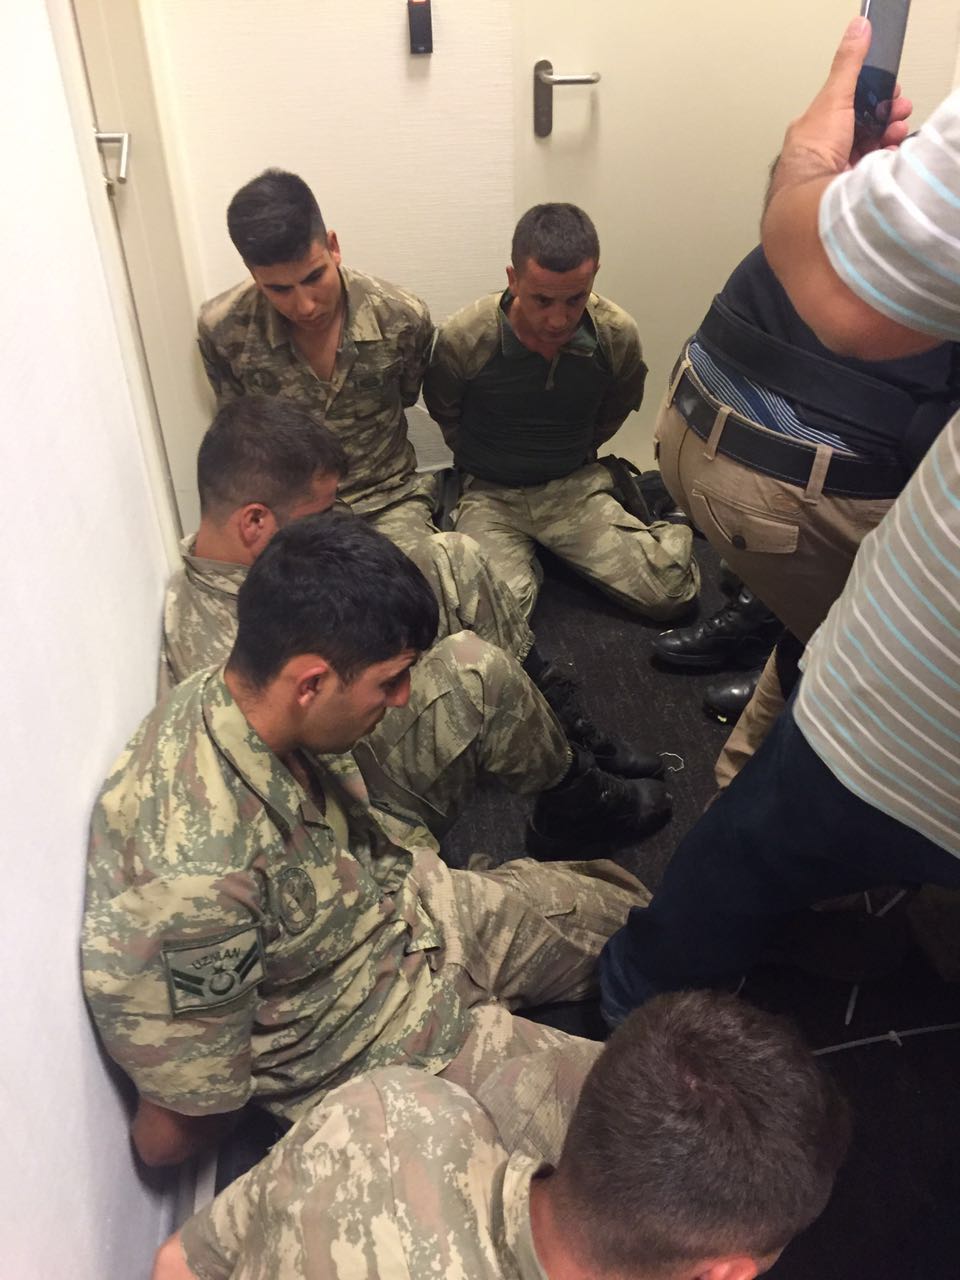 Были задержаны члены FETÖ 13 военнослужащих, 3-ое из которых являются офицерами, которые пытались проникнуть одновременно в президентский дворец и MIT (МИТ) Национальная Разведывательная Организация Турции.